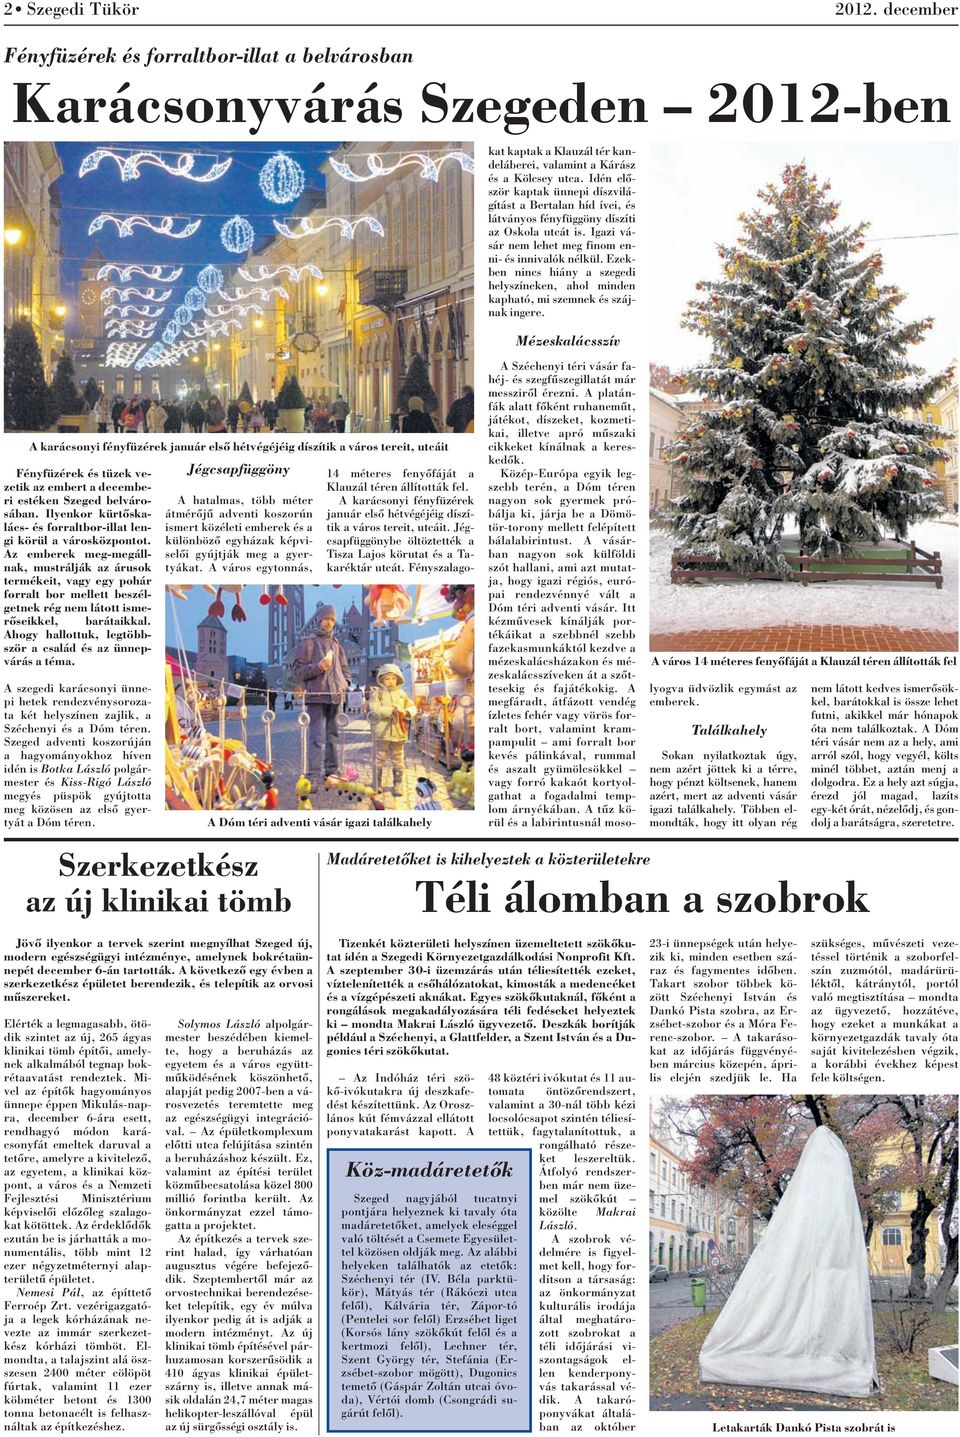 Jégcsapfüggöny 14 méteres fenyõfáját a az embert a decembe- Klauzál téren állították fel. ri estéken Szeged belvárosában.